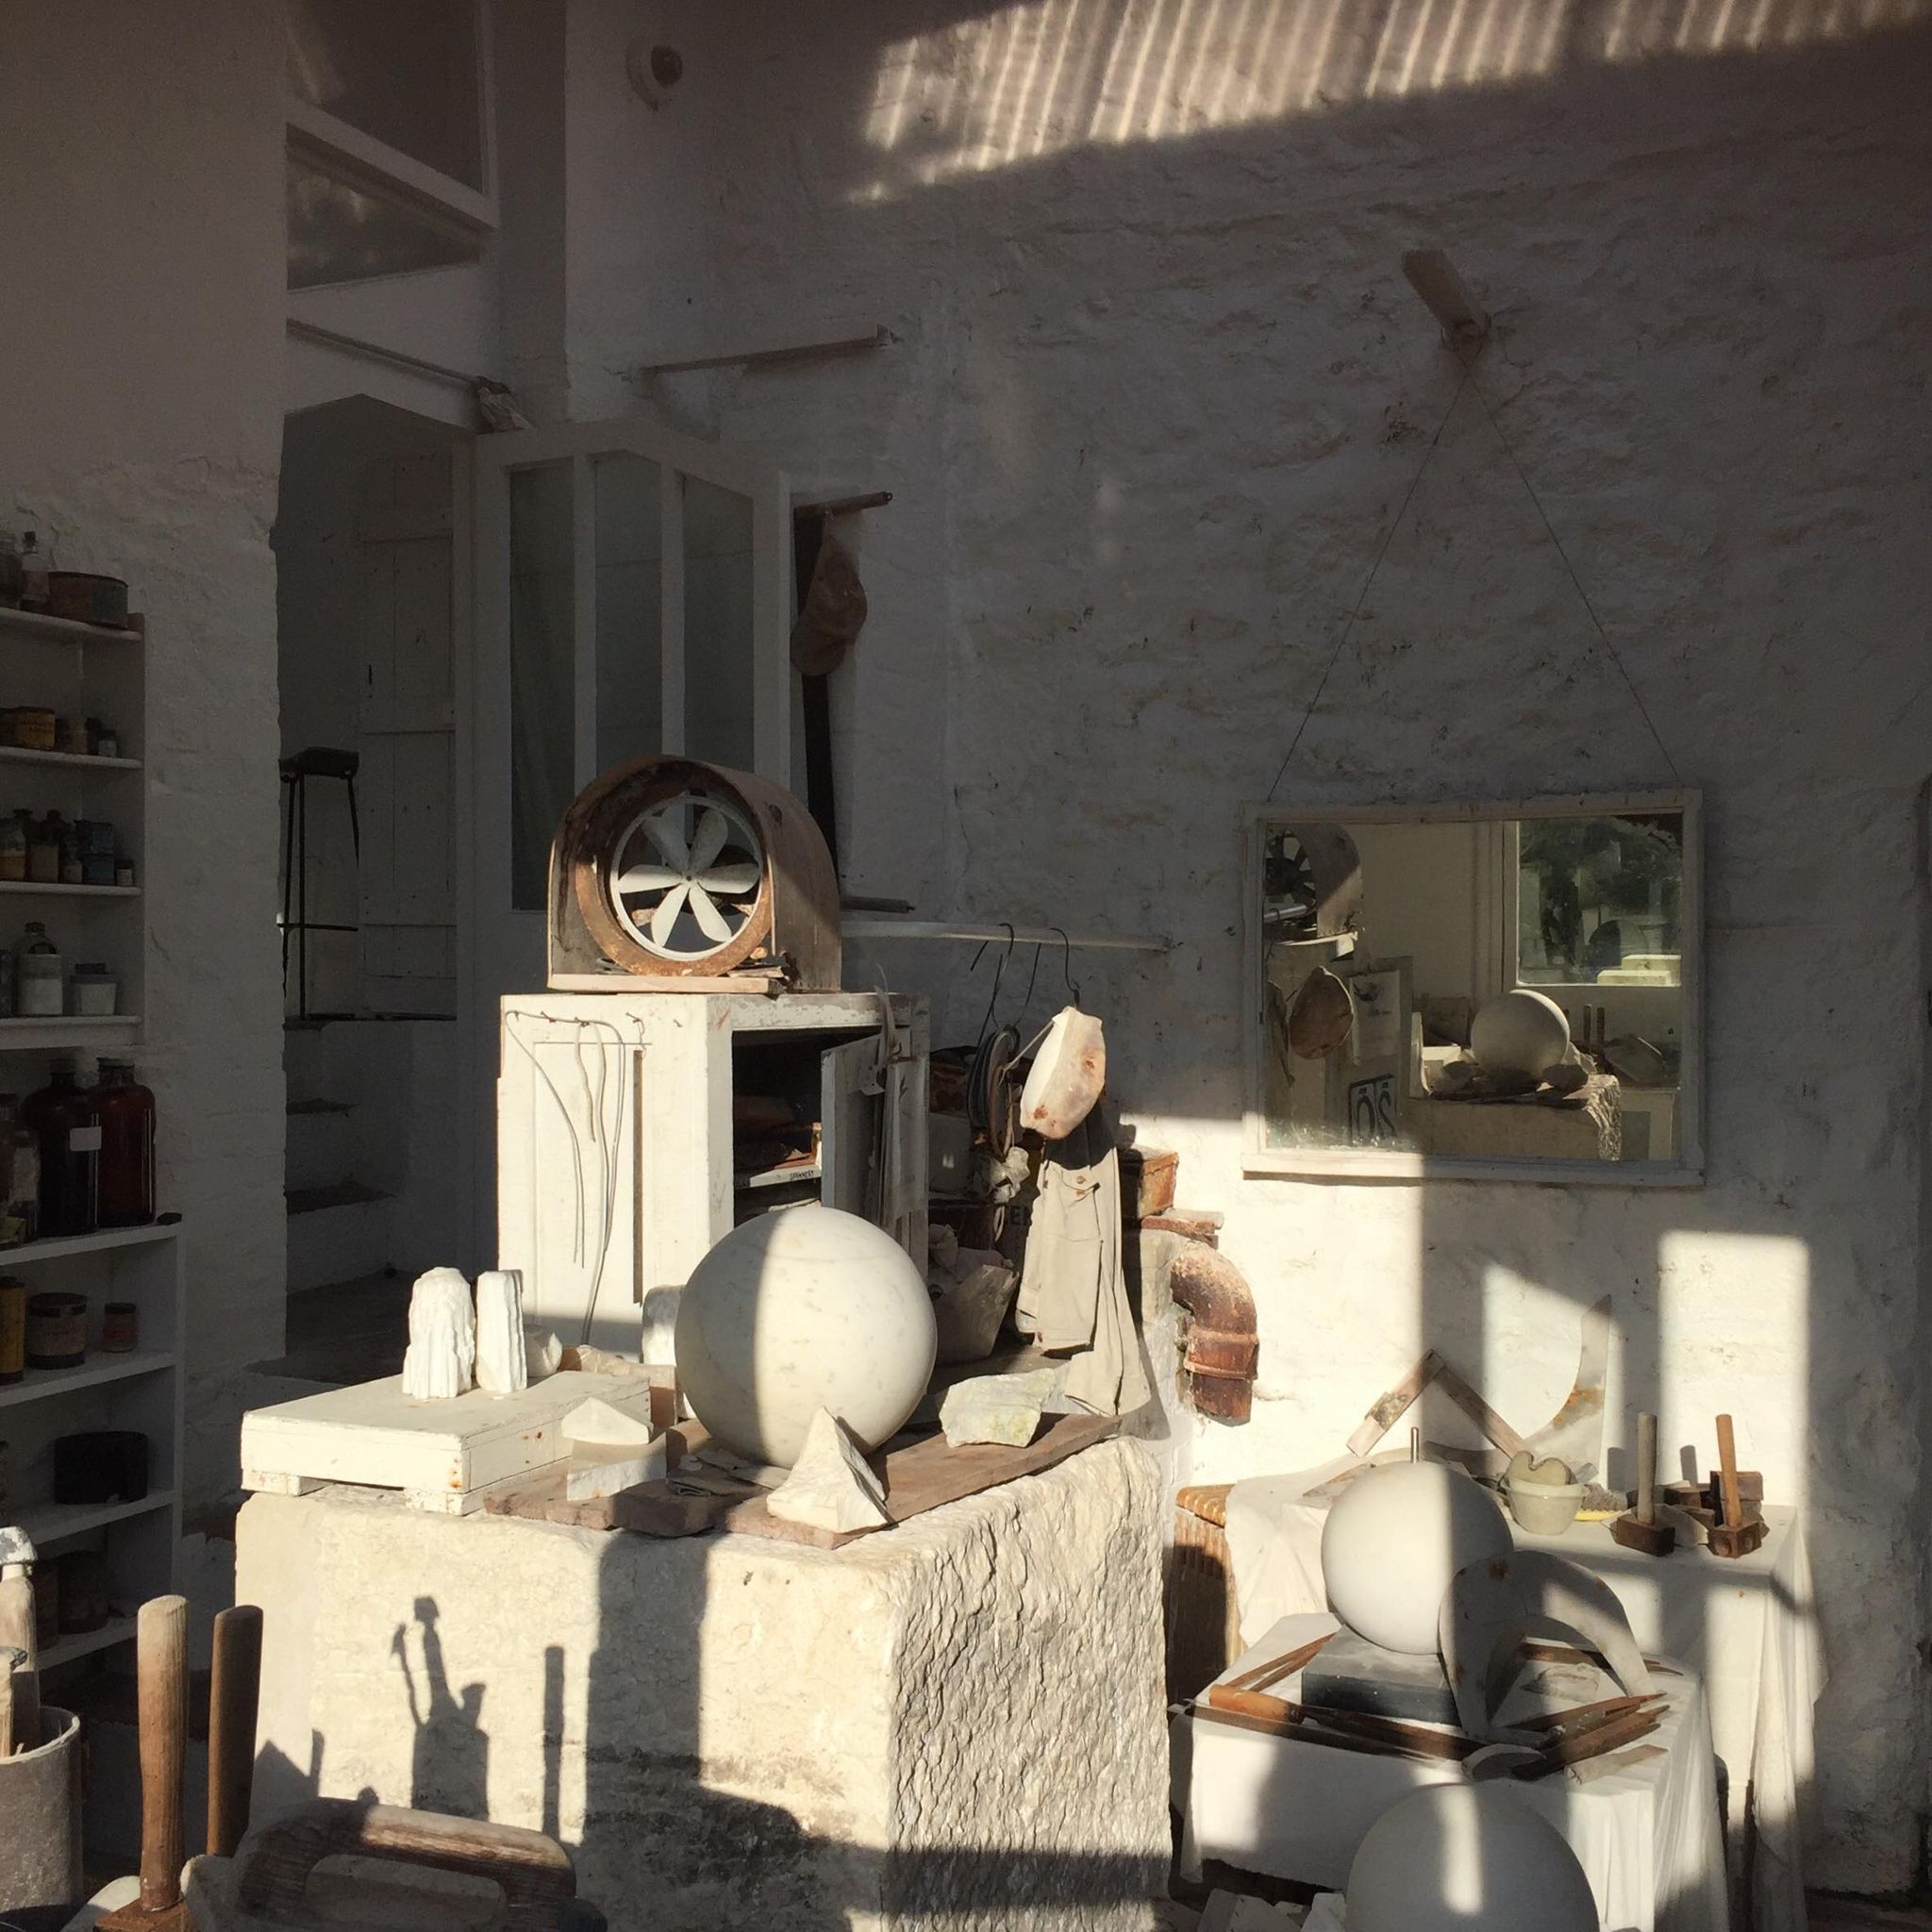 Barbara Hepworth's studio in St Ives